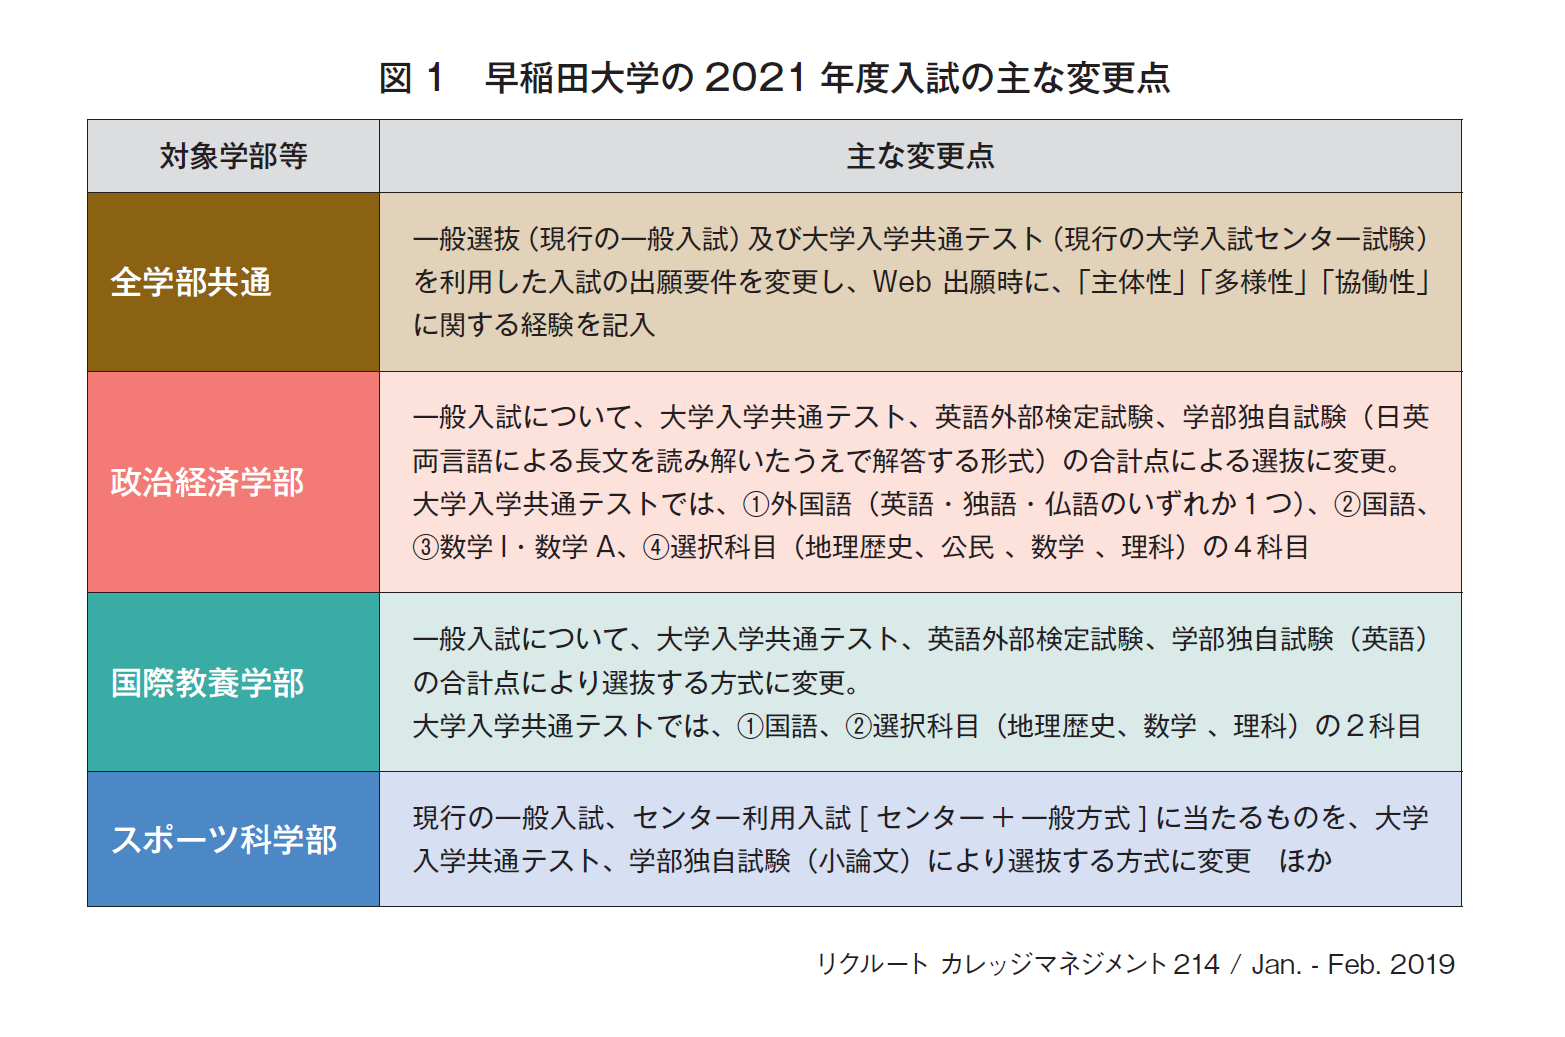 図1　早稲田大学の2021 年度入試の主な変更点